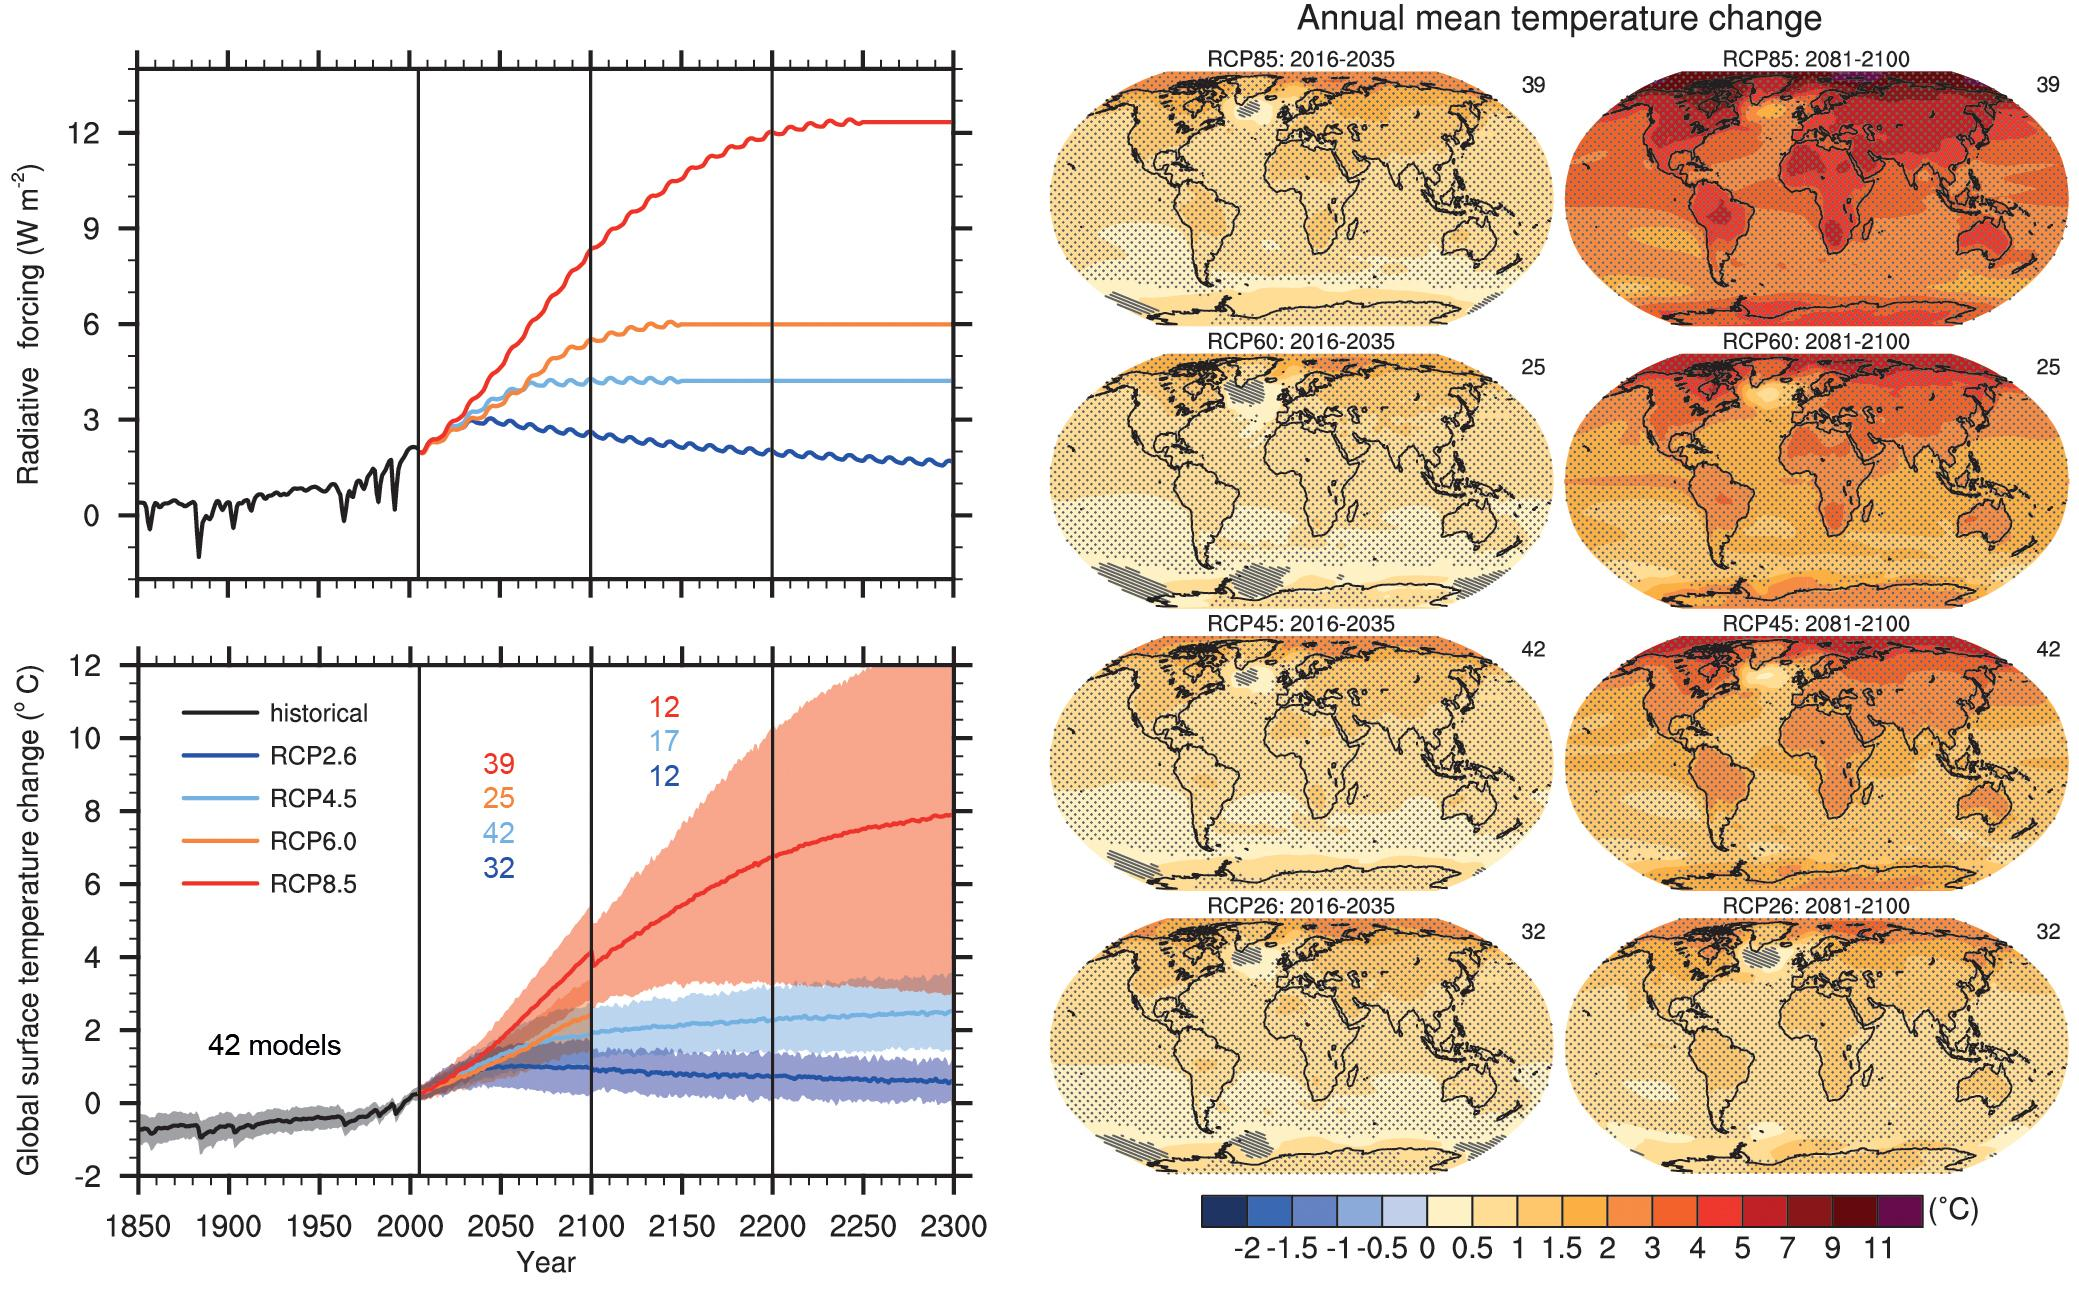 Πάνω αριστερά: Παγκόσμιο RFT για 4 RCP σενάρια σύμφωνα με το μοντέλο MAGICC. Κάτω αριστερά: Εκτιμήσεις της μεταβολής της παγκόσμιας θερμοκρασίας επιφανείας για 4 RCP σενάρια από διάφορα AOGCMs.